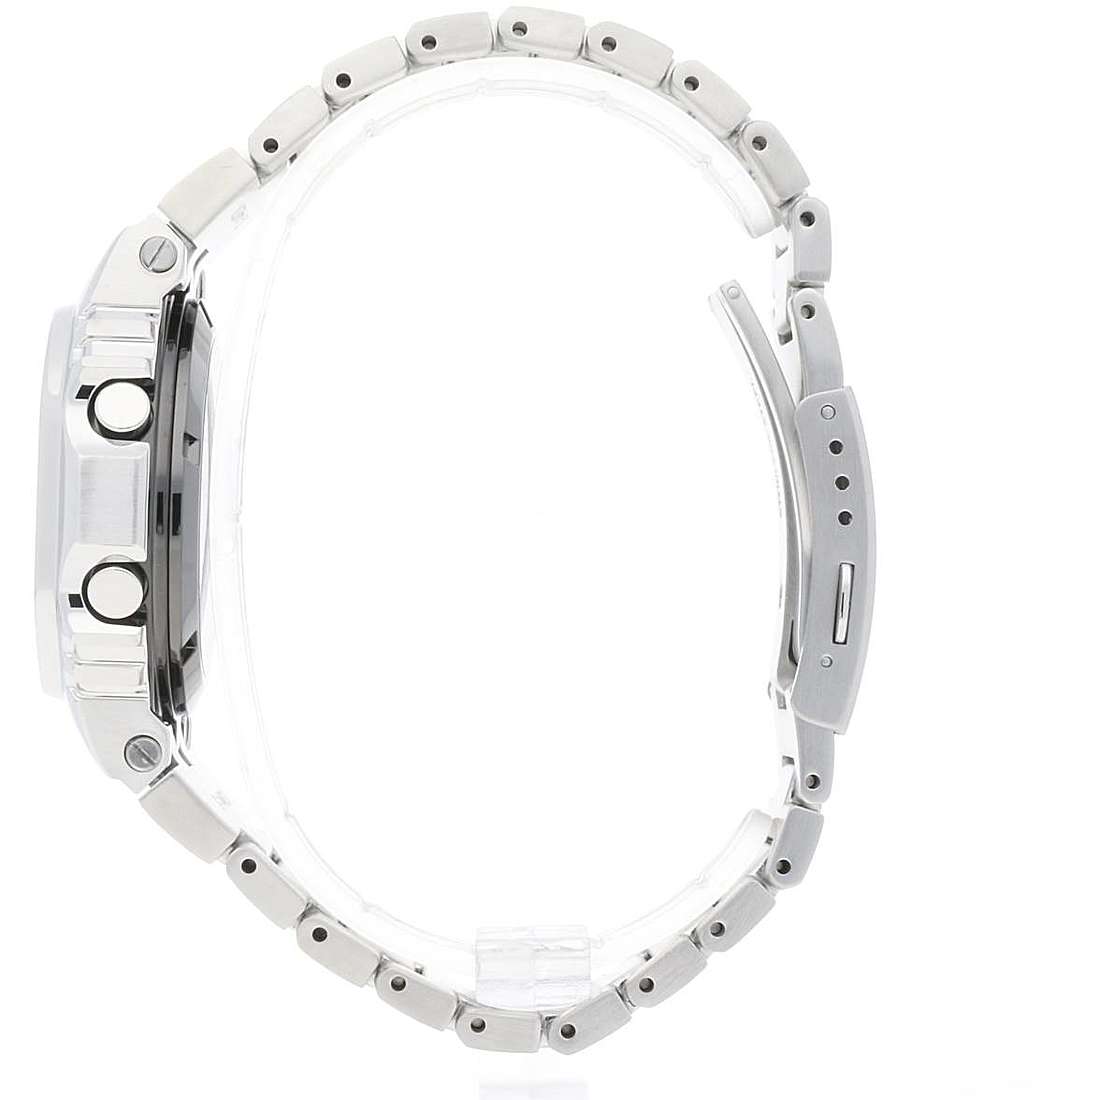 Preise Uhren mann G-Shock GMW-B5000D-1ER